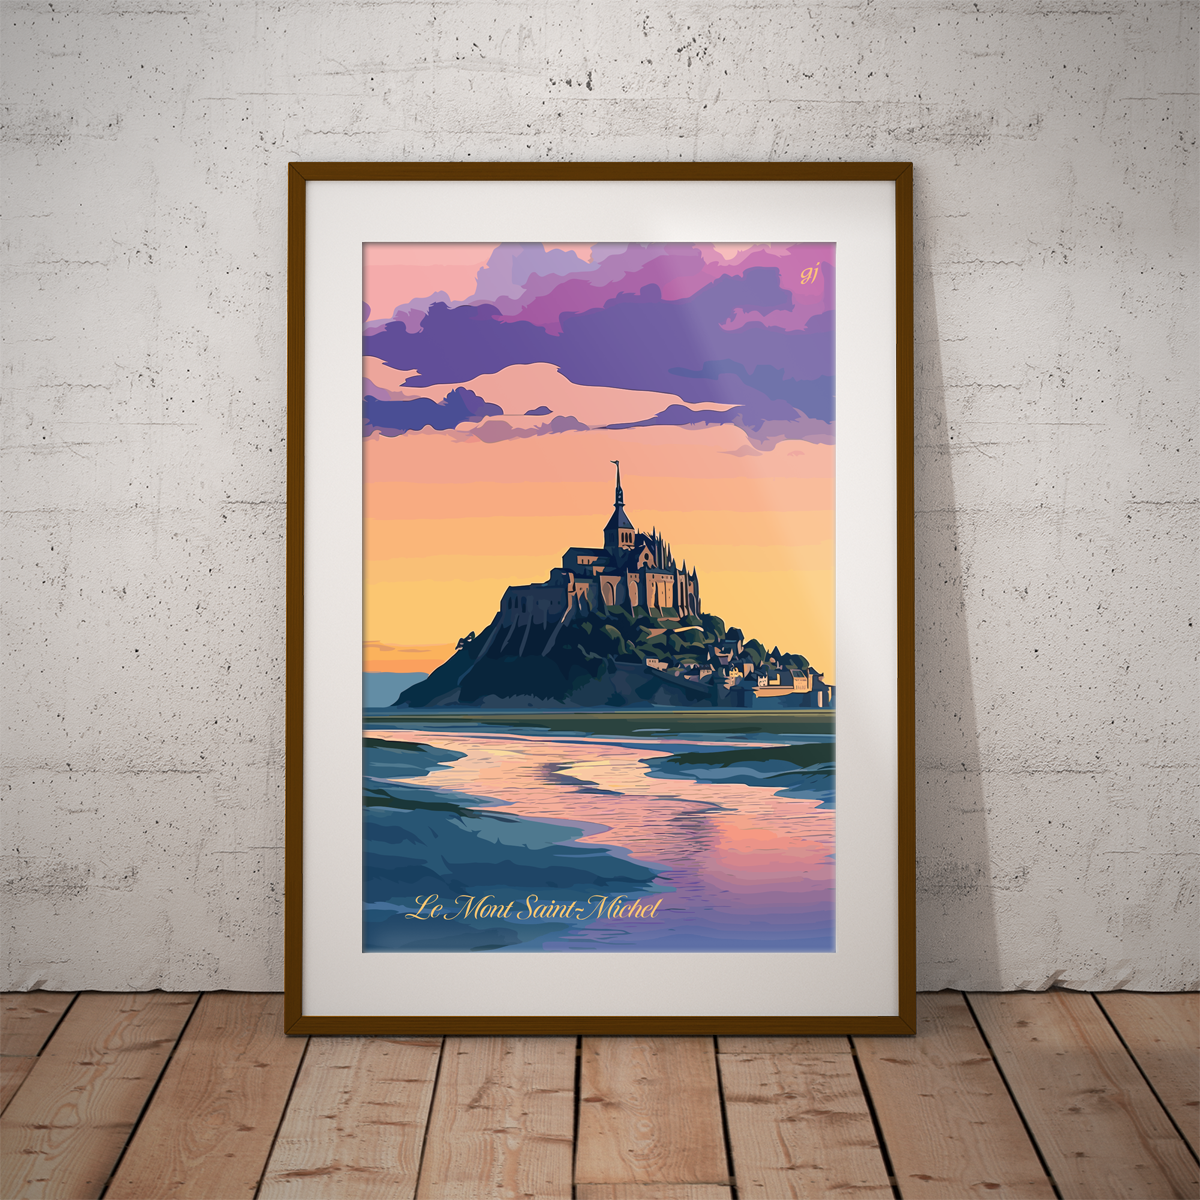 Mont-Saint-Michel poster by bon voyage design